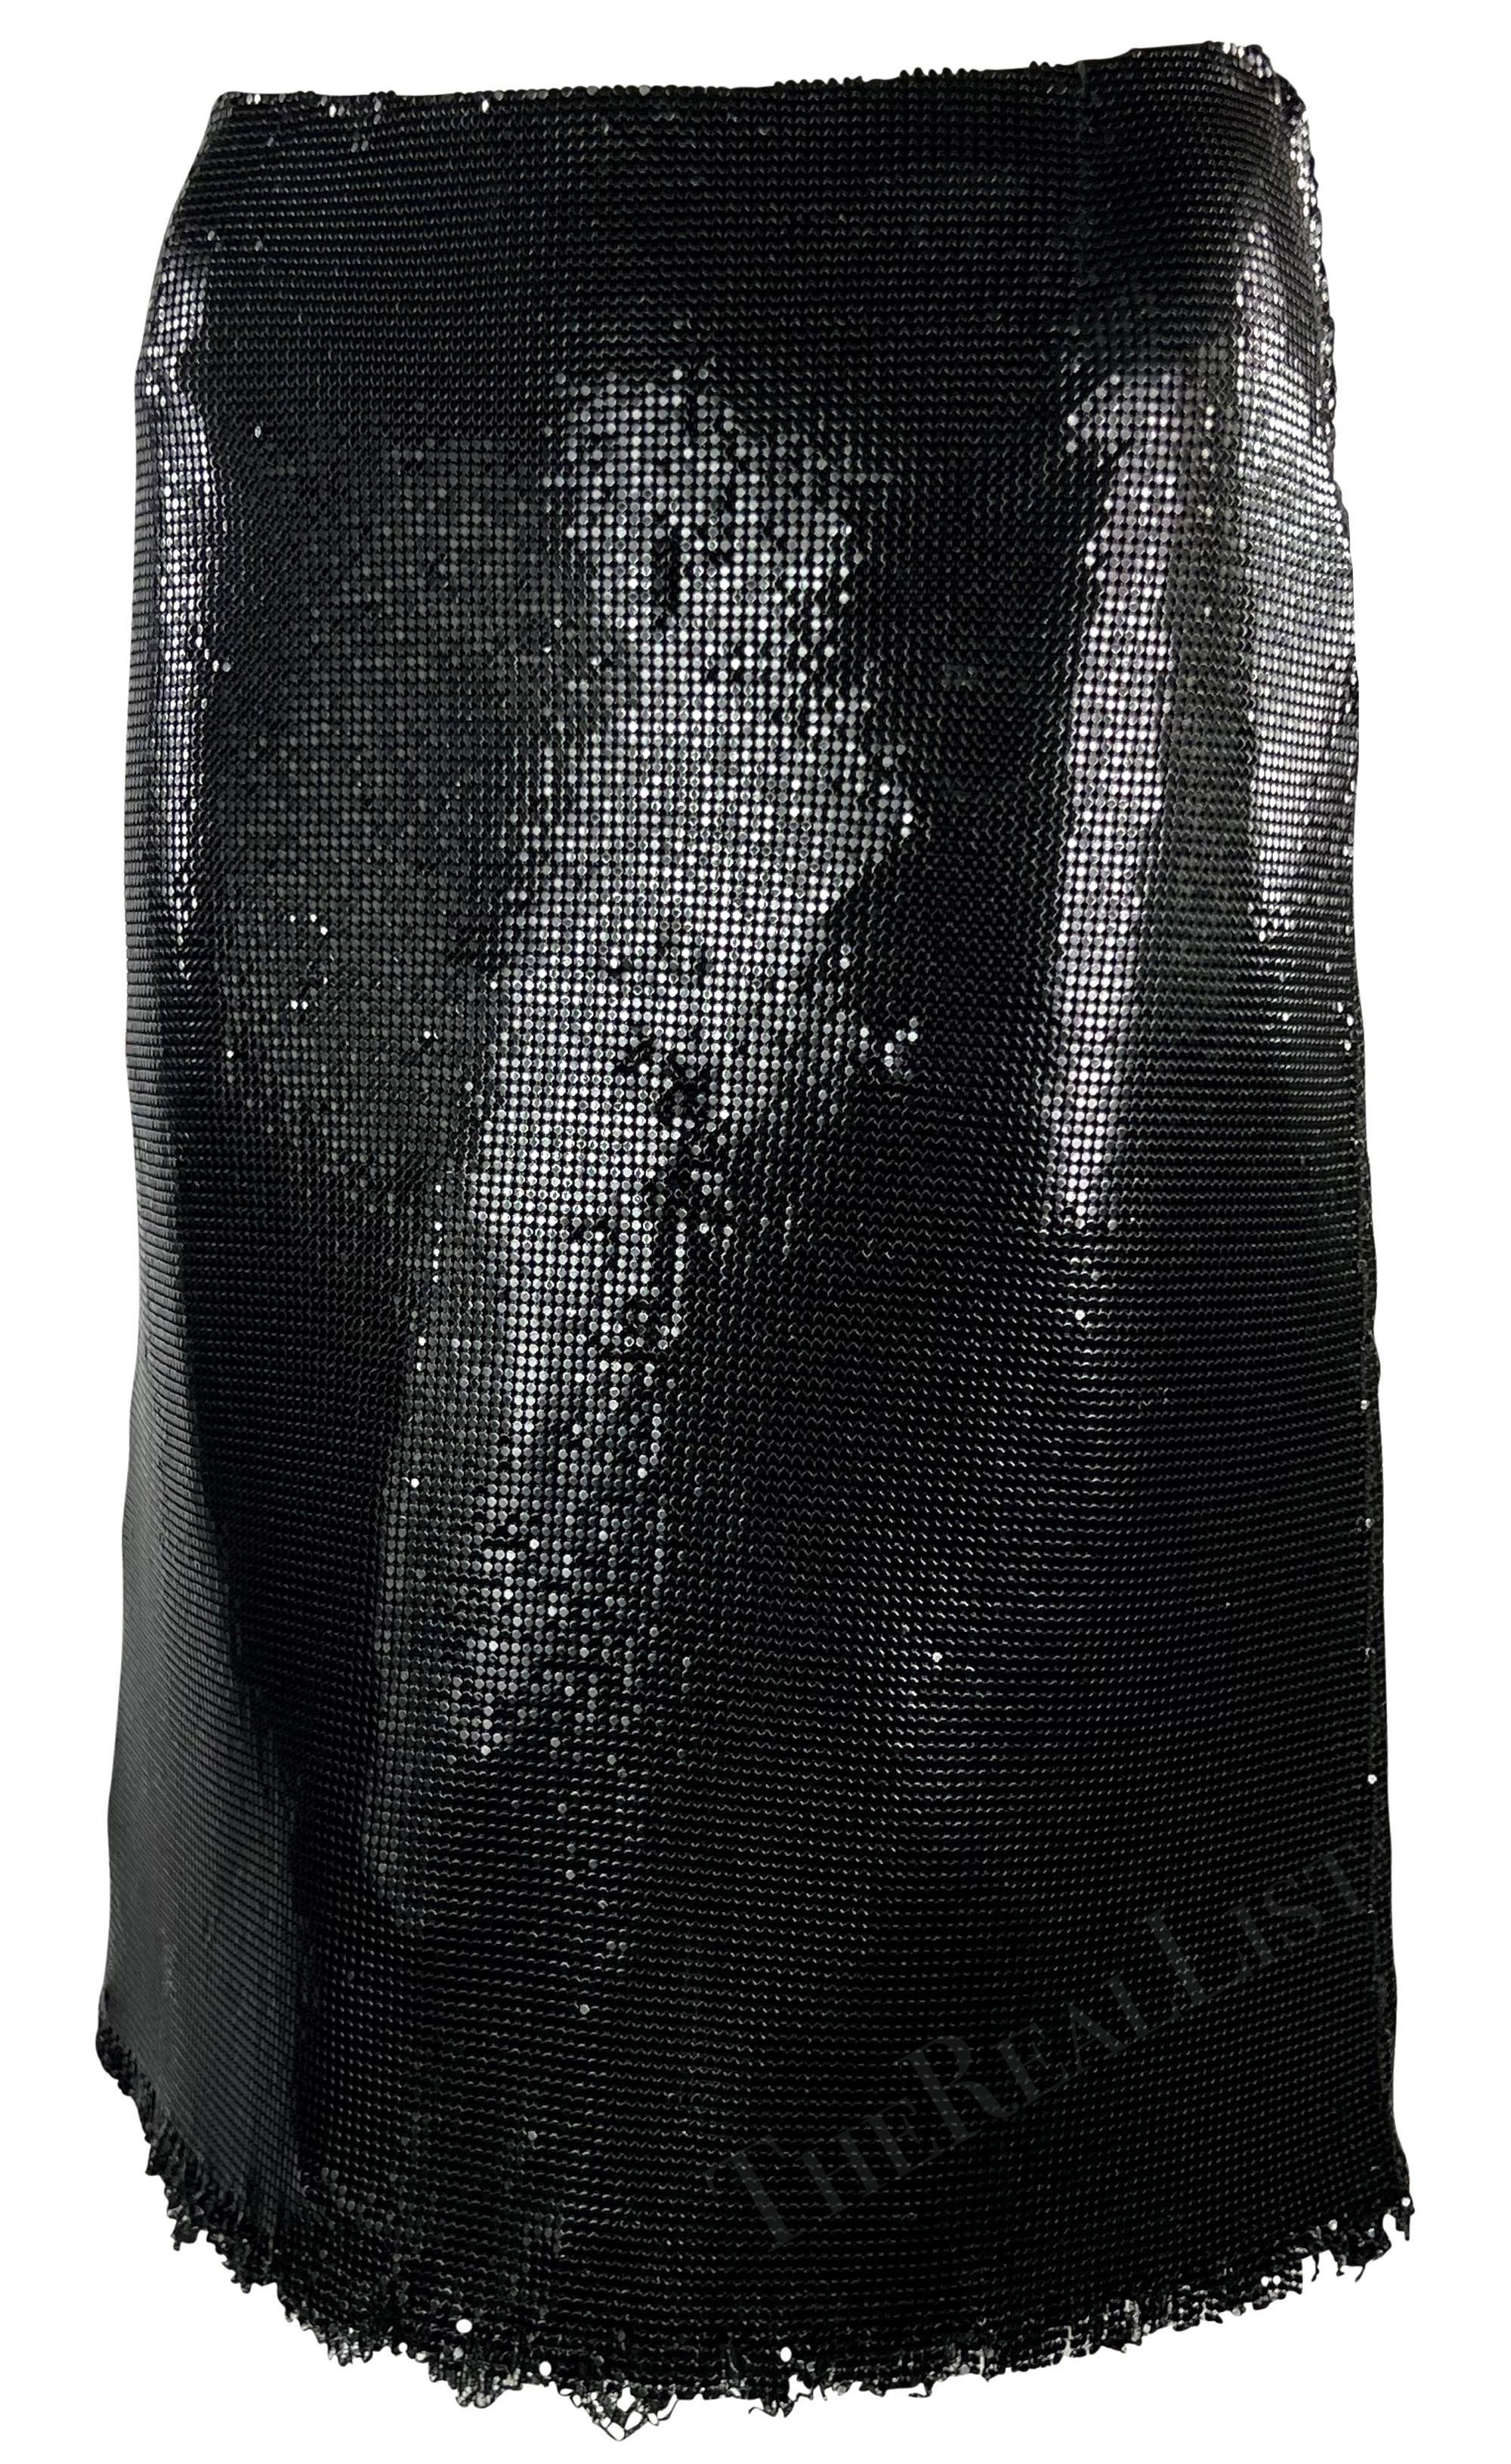 Entièrement réalisée en cotte de mailles Oroton noir chatoyant, cette jupe Gianni Versace a été conçue par Donatella Versace pour la collection automne-hiver 1999. Dotée d'une silhouette aplatie, cette fabuleuse jupe est complétée par un ourlet